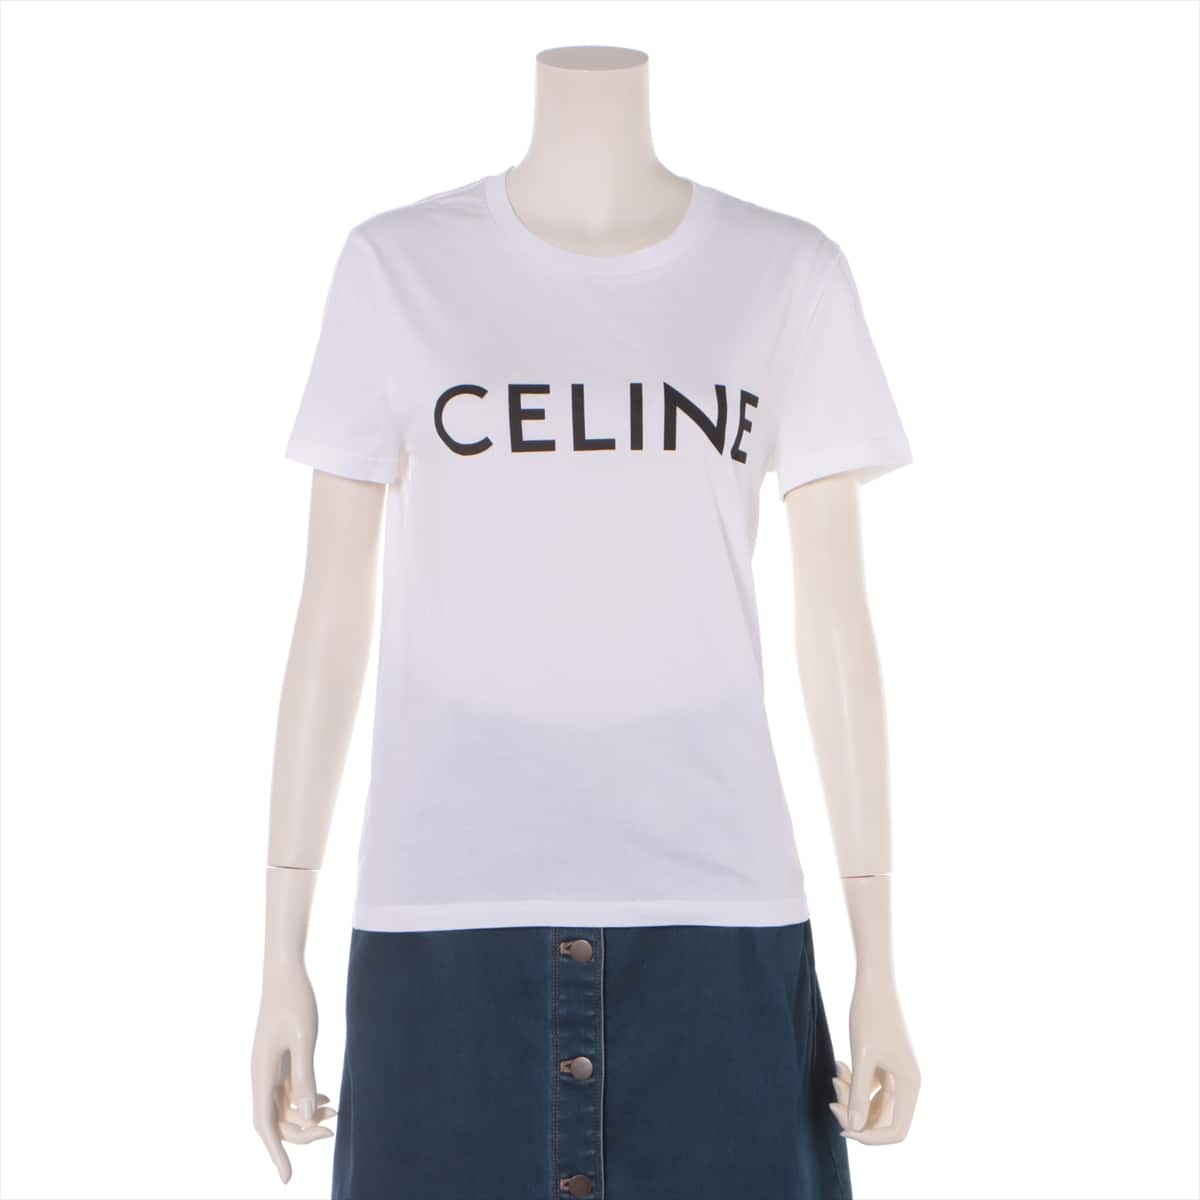 CELINE 20SS Cotton T-shirt S Ladies' White  2X314916G Eddie period